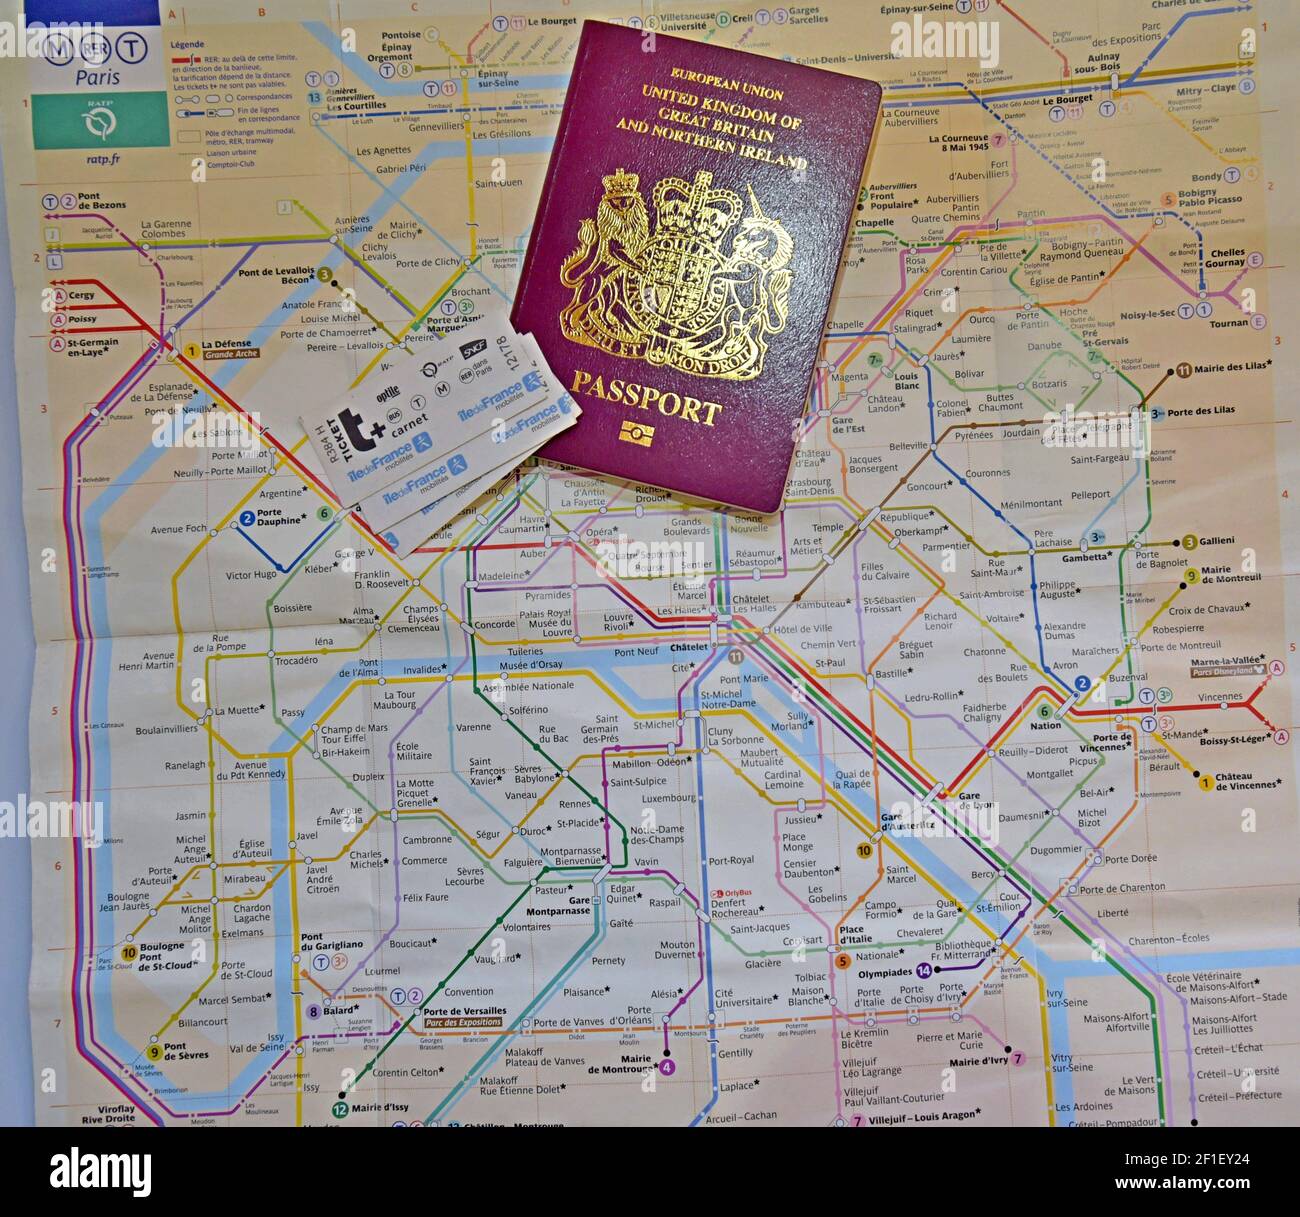 Ein Paris Metro & RER Express Zug Plan mit Carnet Tickets und ein UK-Pass  Stockfotografie - Alamy